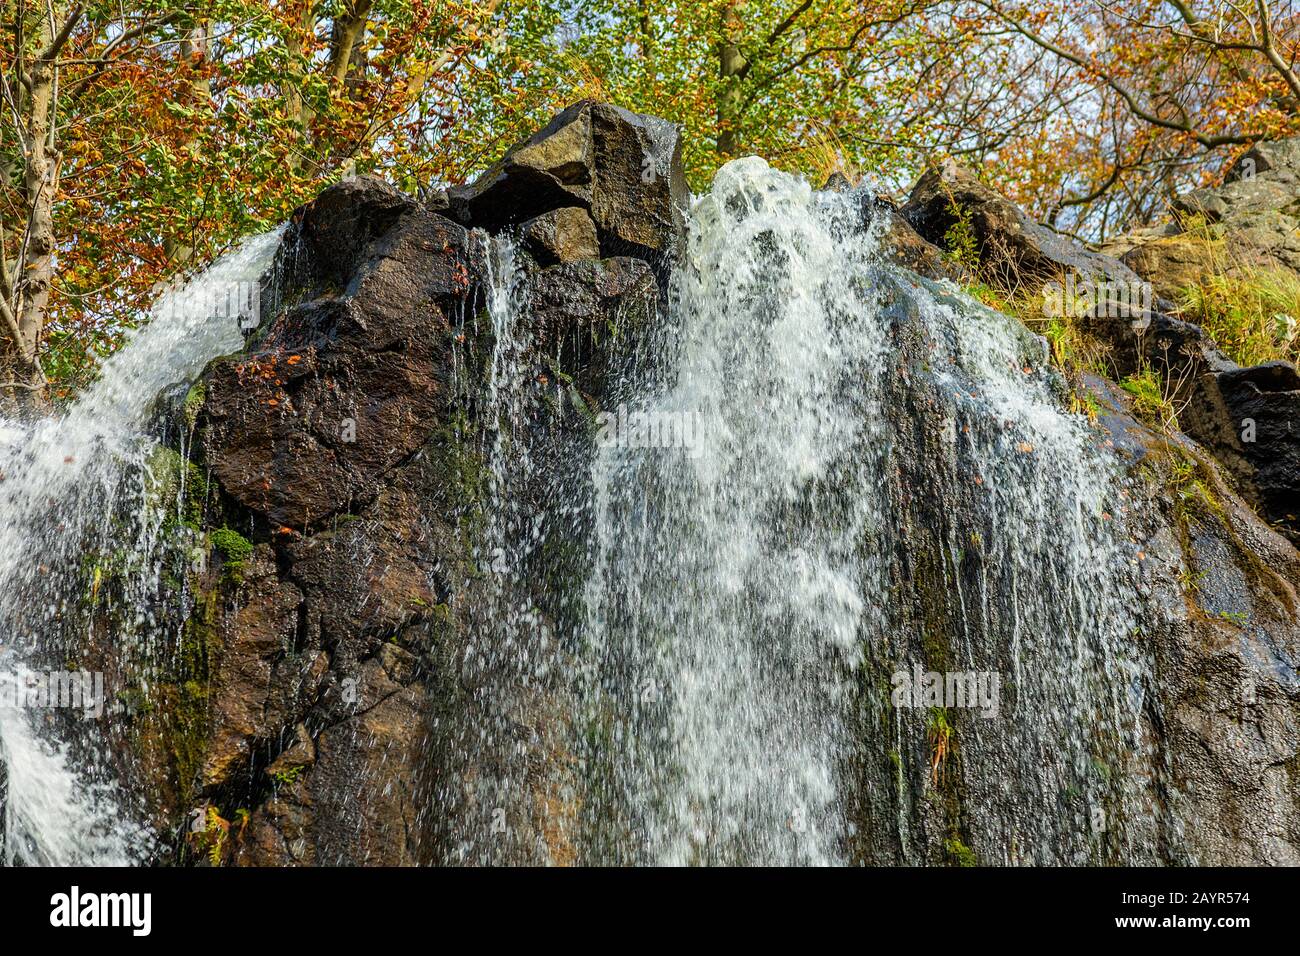 Radau waterfall in autumn, Germany, Lower Saxony, Harz National Park, Bad Harzburg Stock Photo